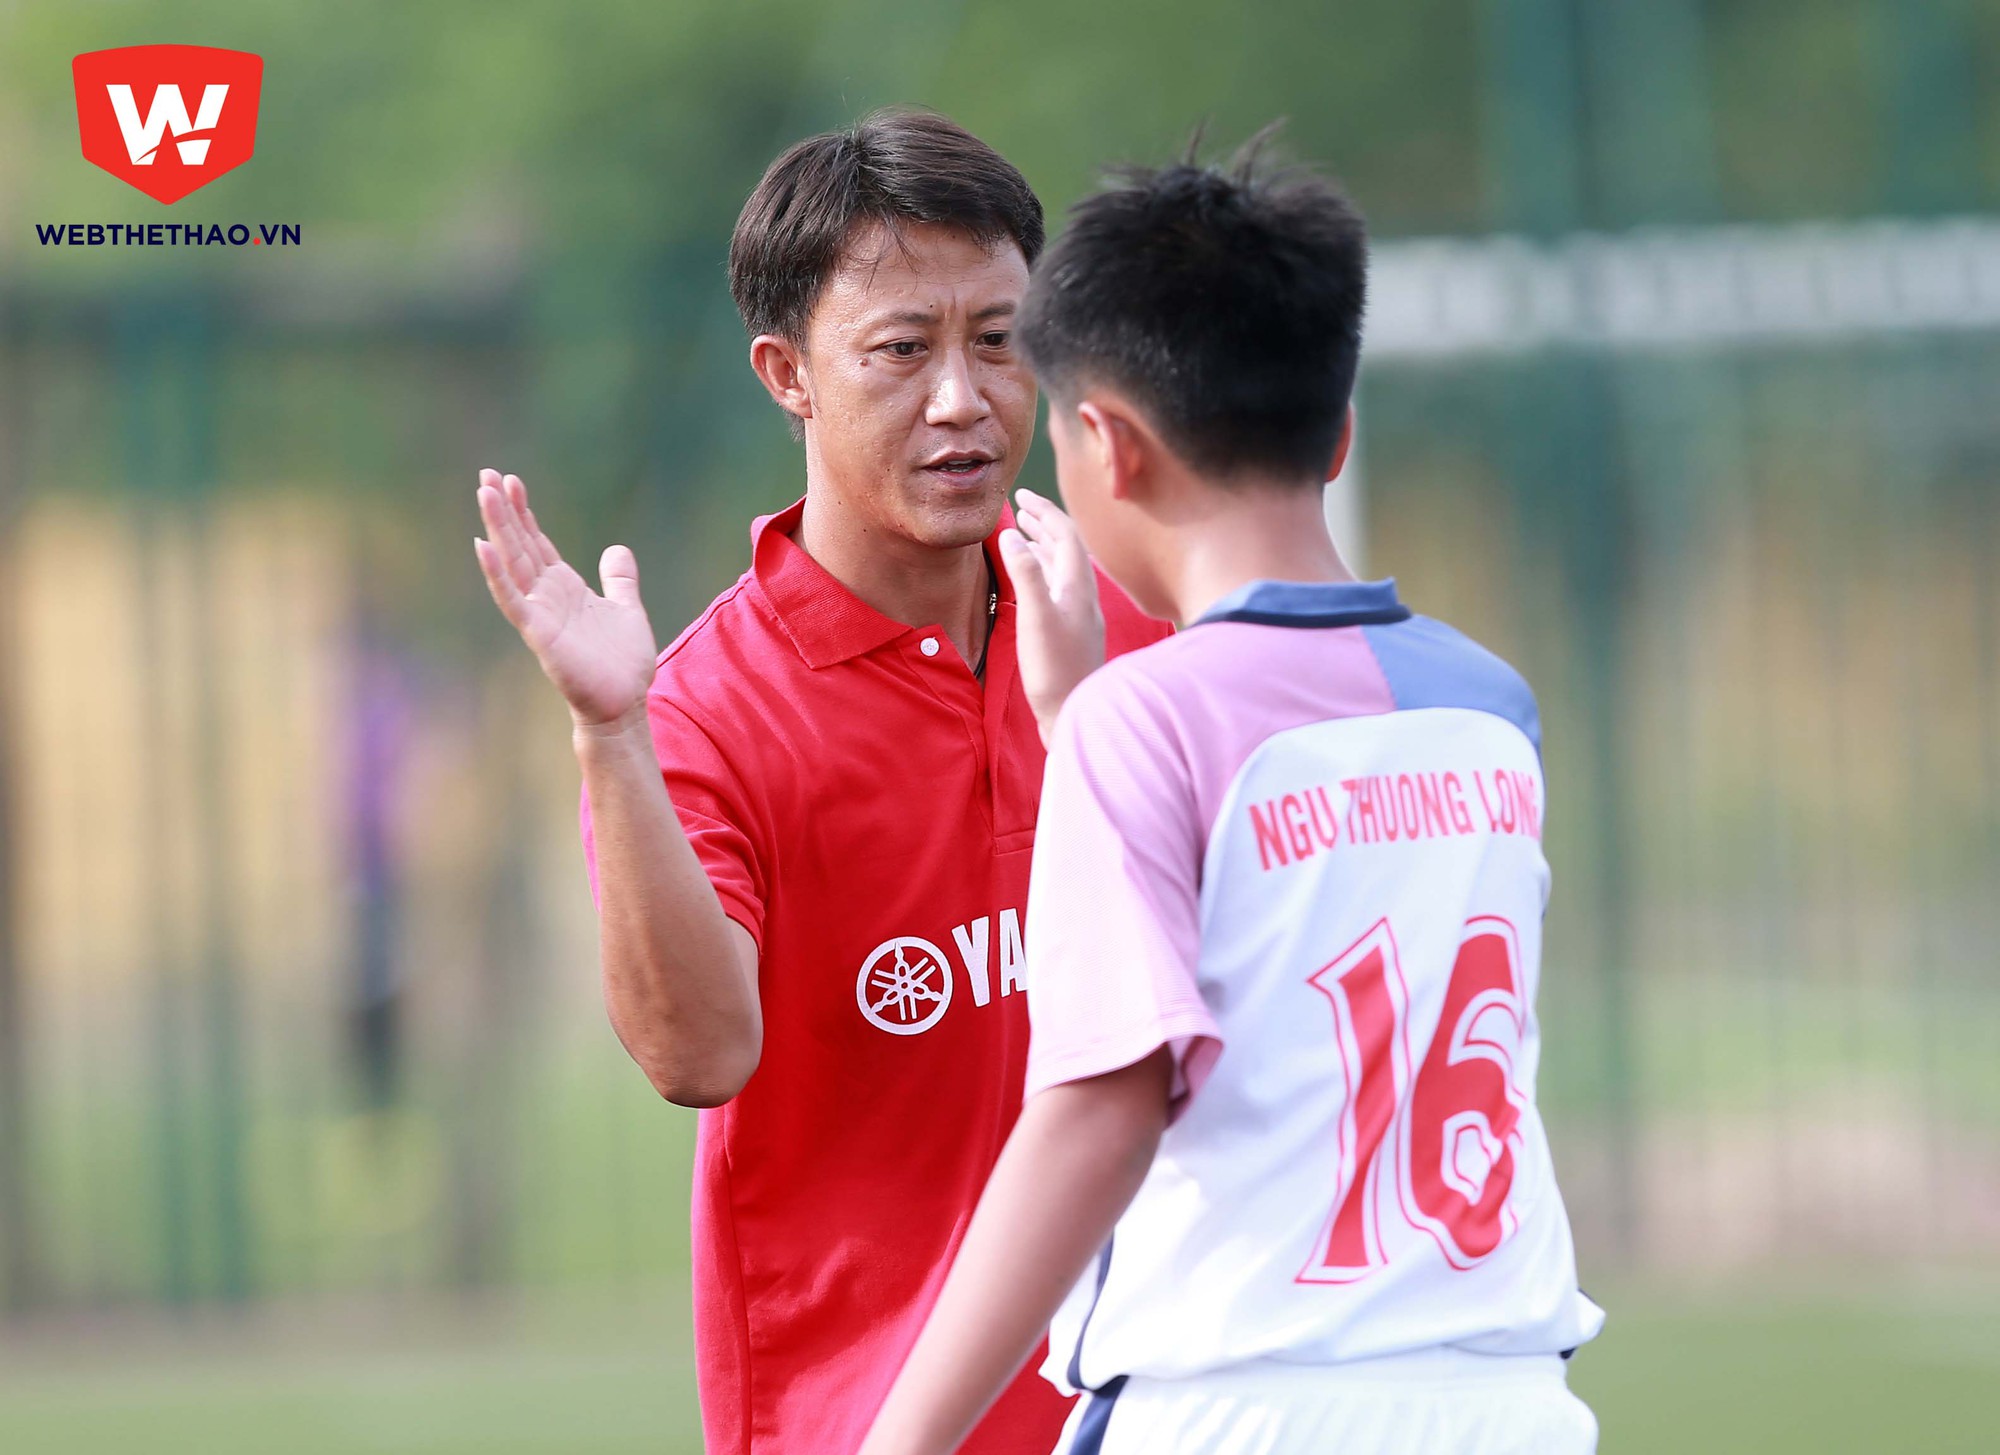 HLV Nguyễn Thành Công rất hài lòng với thái độ thi đấu của các học trò.